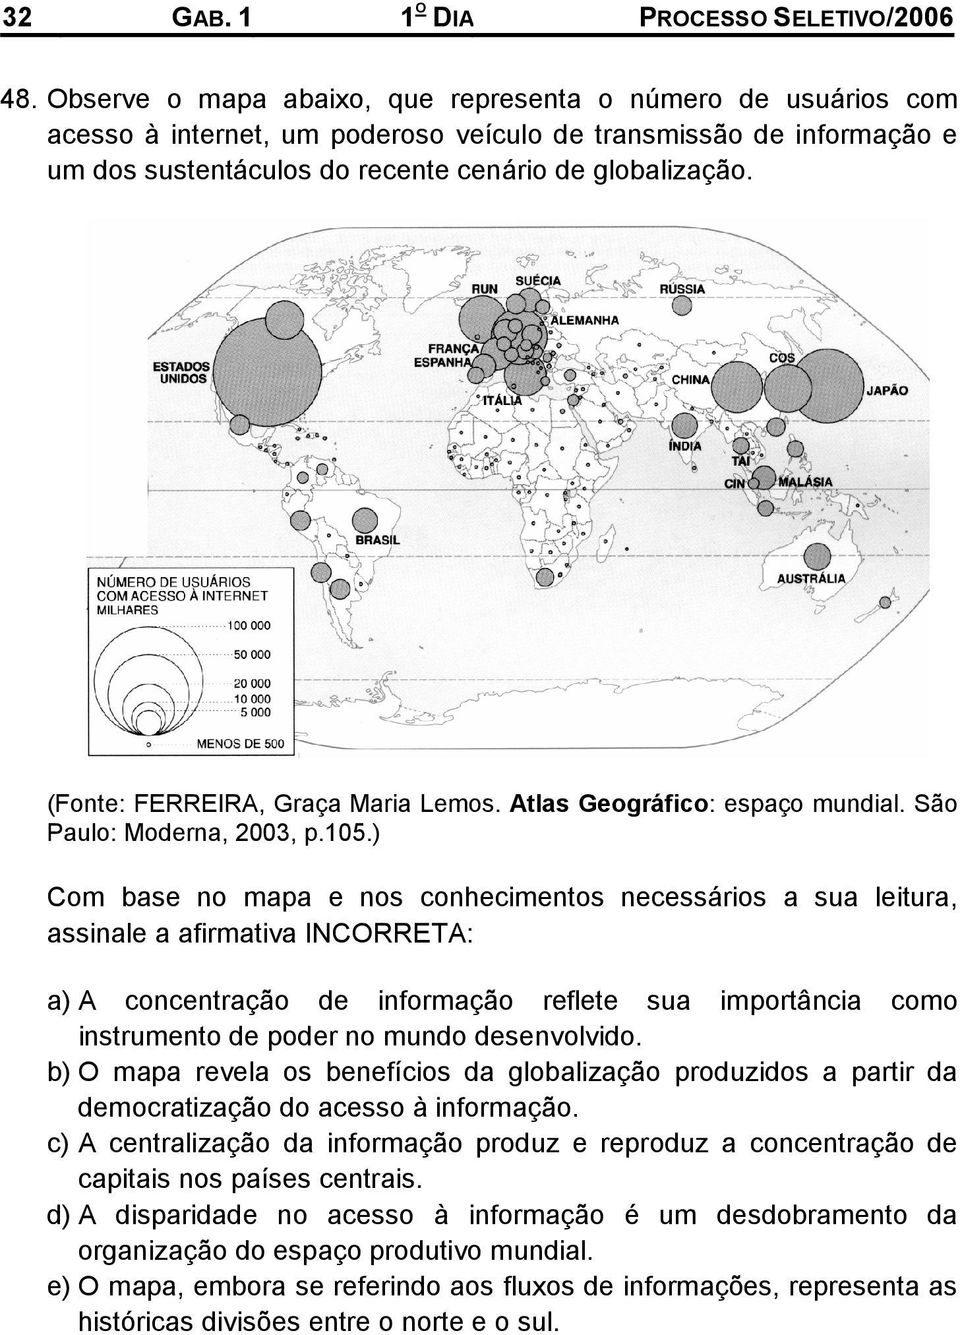 (Fonte: FERREIRA, Graça Maria Lemos. Atlas Geográfico: espaço mundial. São Paulo: Moderna, 2003, p.105.